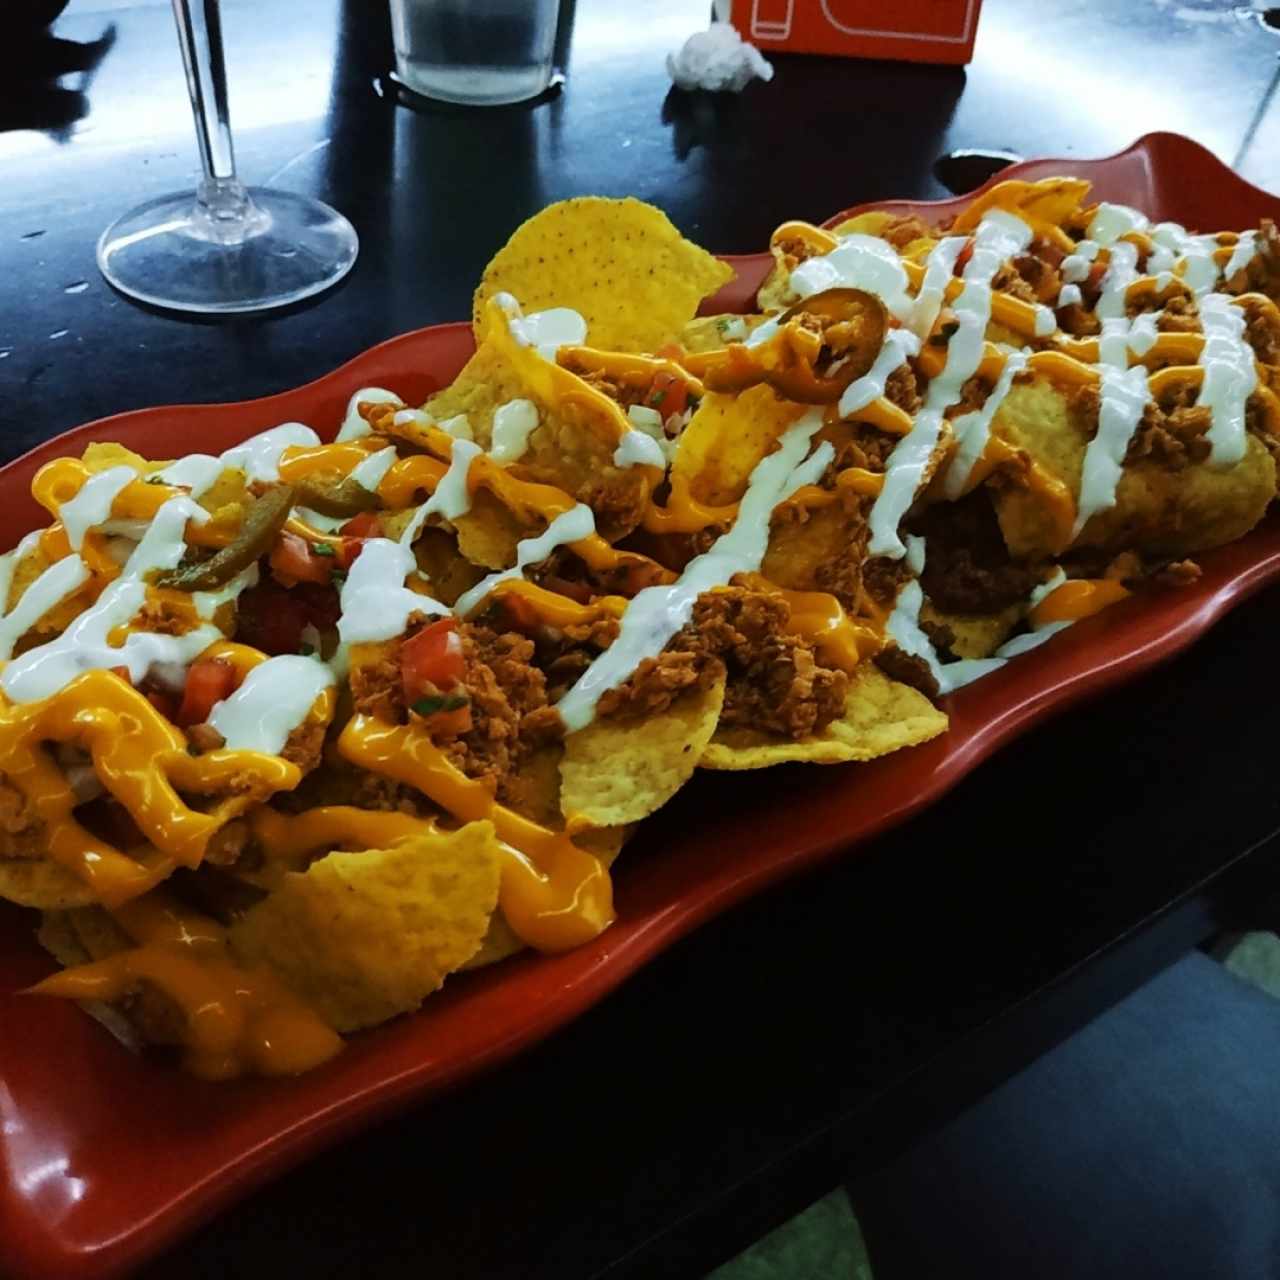 Chicharito's nachos mixtos